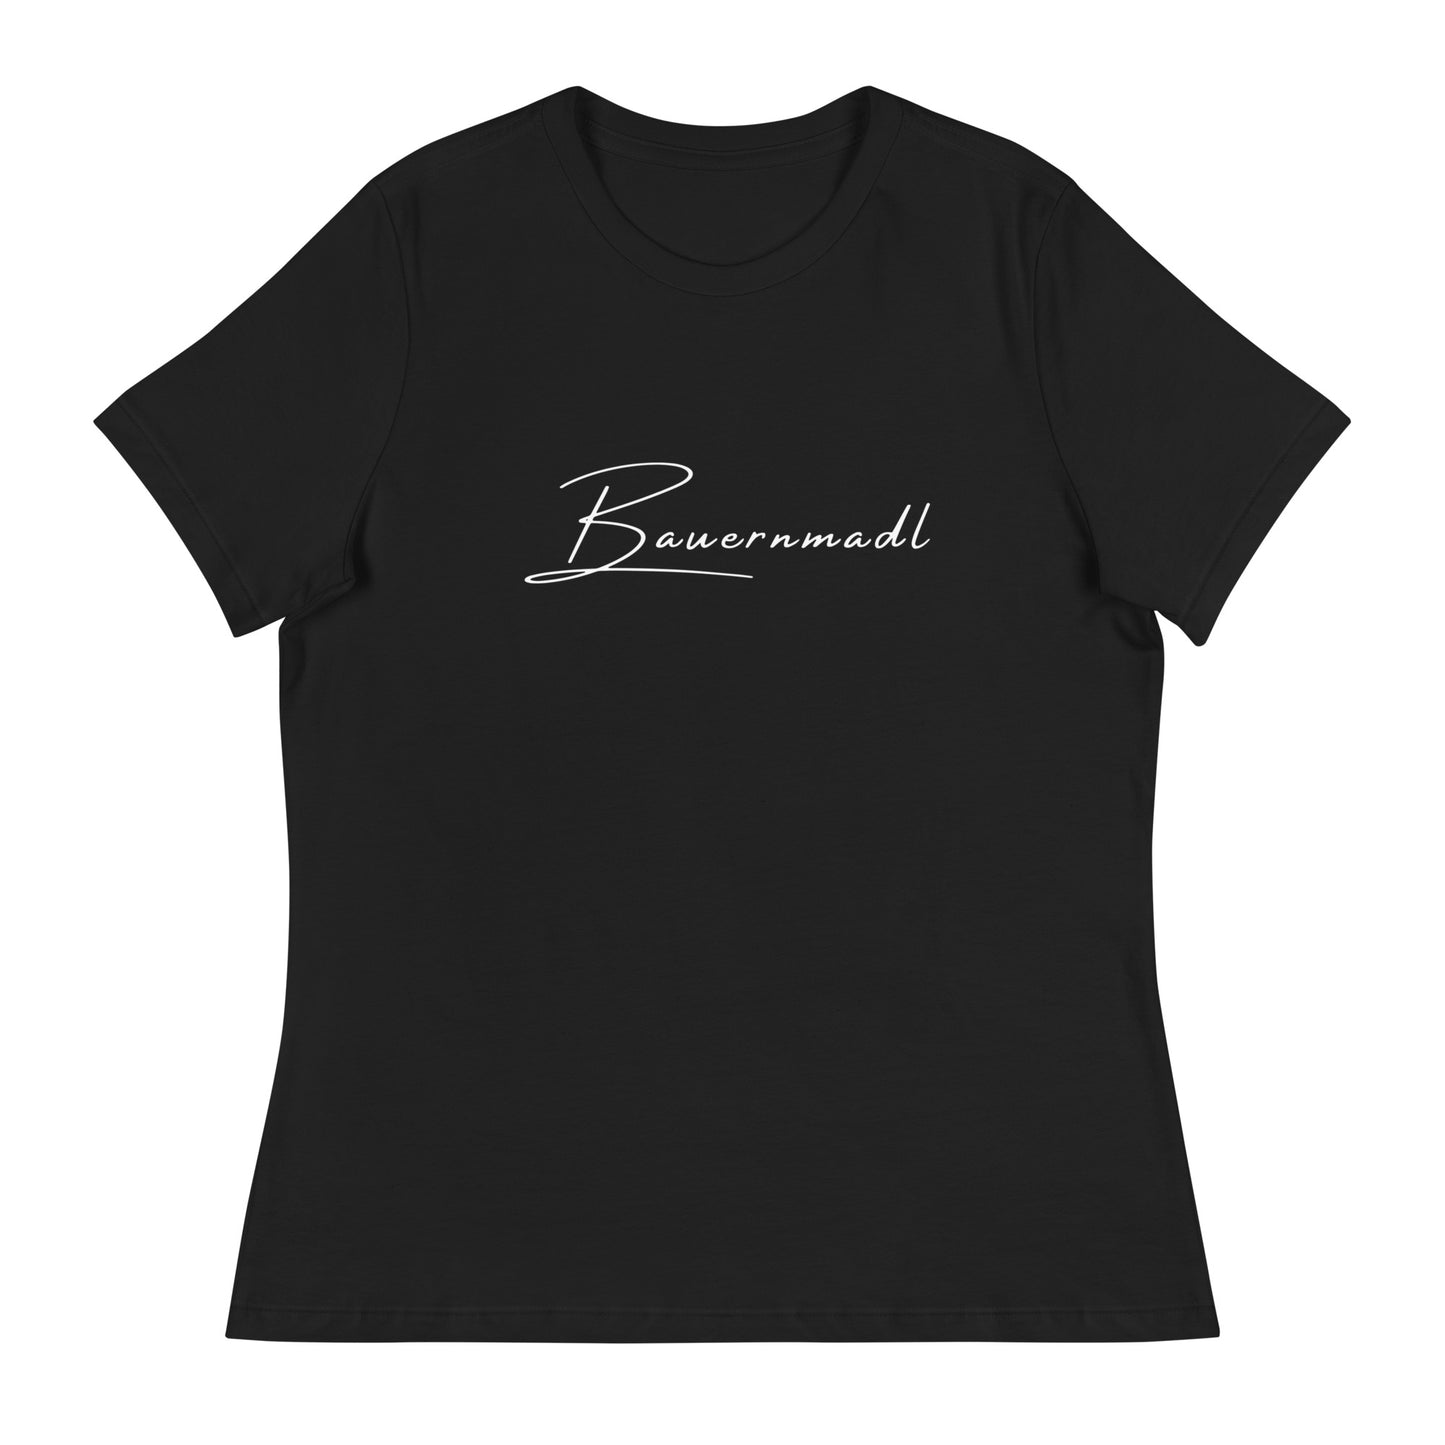 Bauernmadl - Frauen T-Shirt